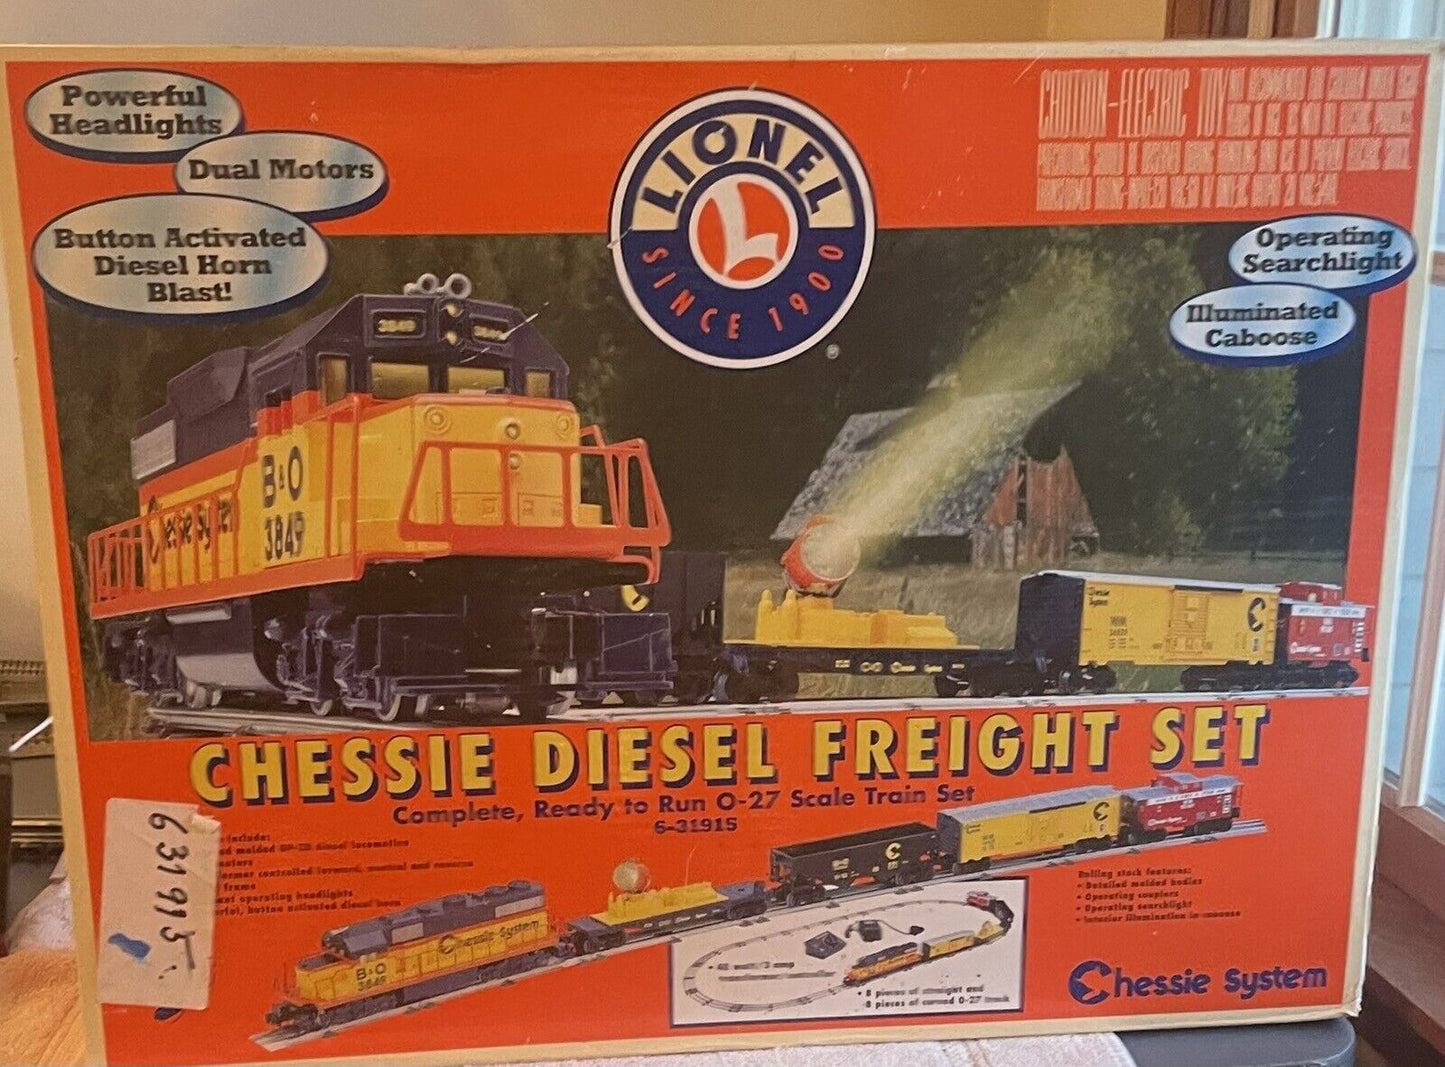 Lionel 6-31915 Chessie GP-38 O Gauge Diesel Freight Train Set LN/Box. No Hopper.